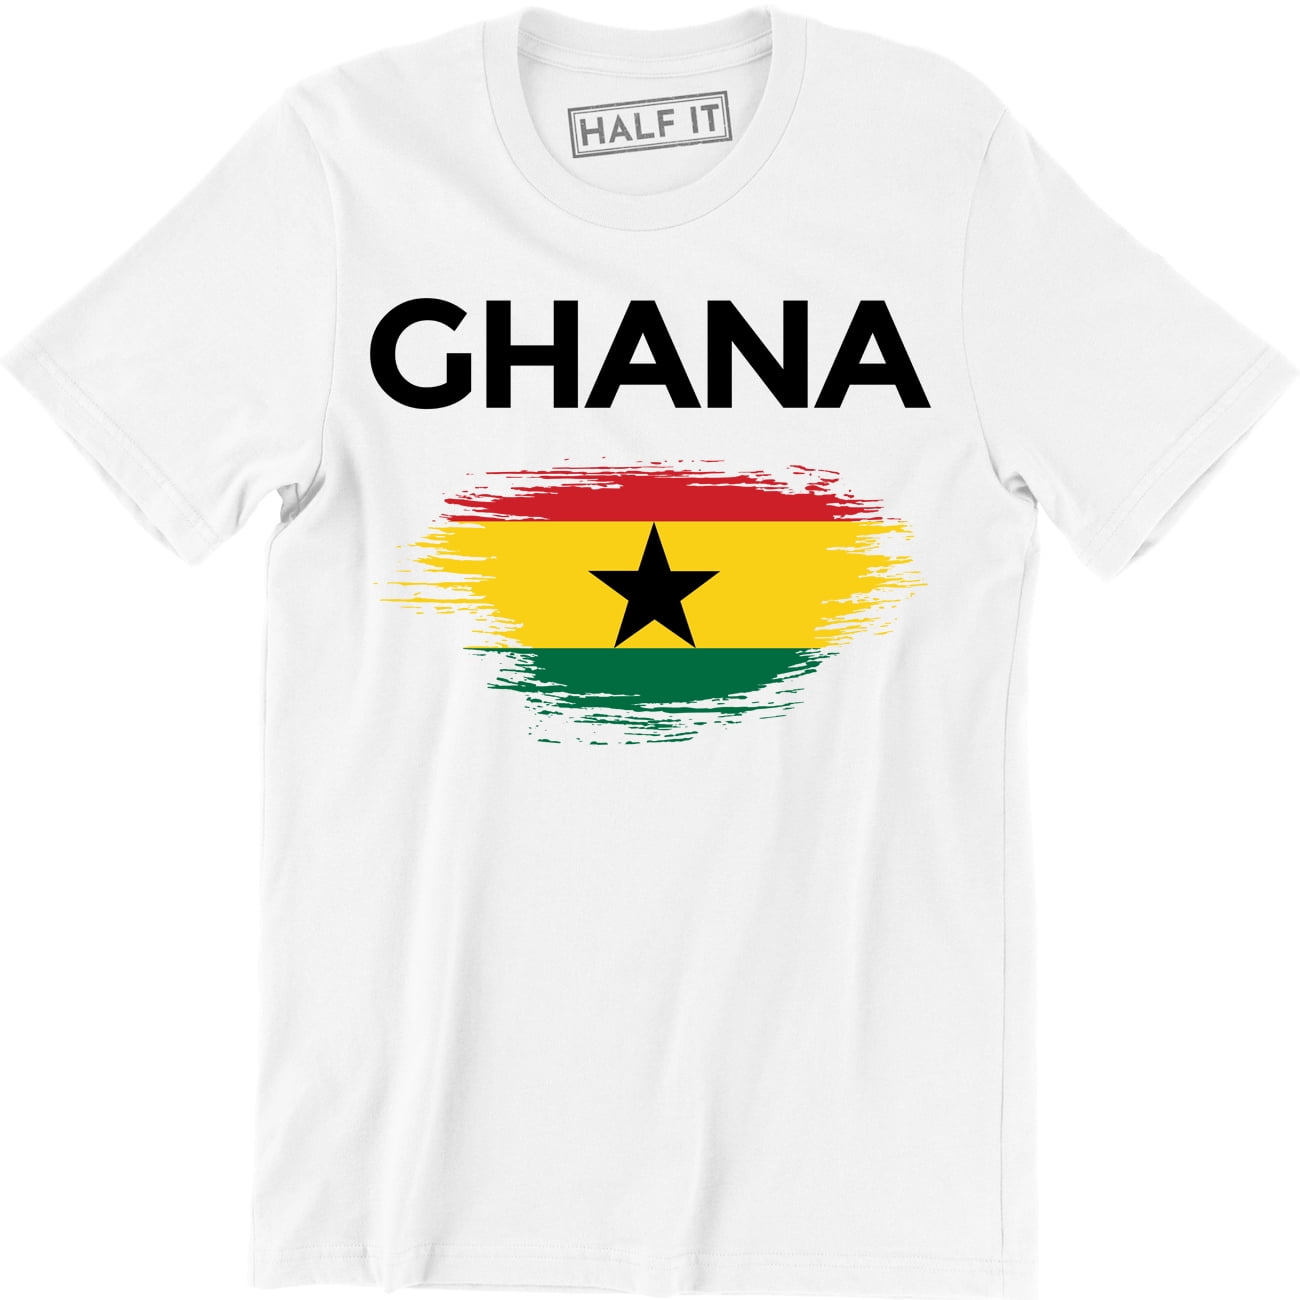 GHANA GRUNGE FLAG MENS T-SHIRT TEE TOP GHANAIAN SHIRT FOOTBALL JERSEY GIFT